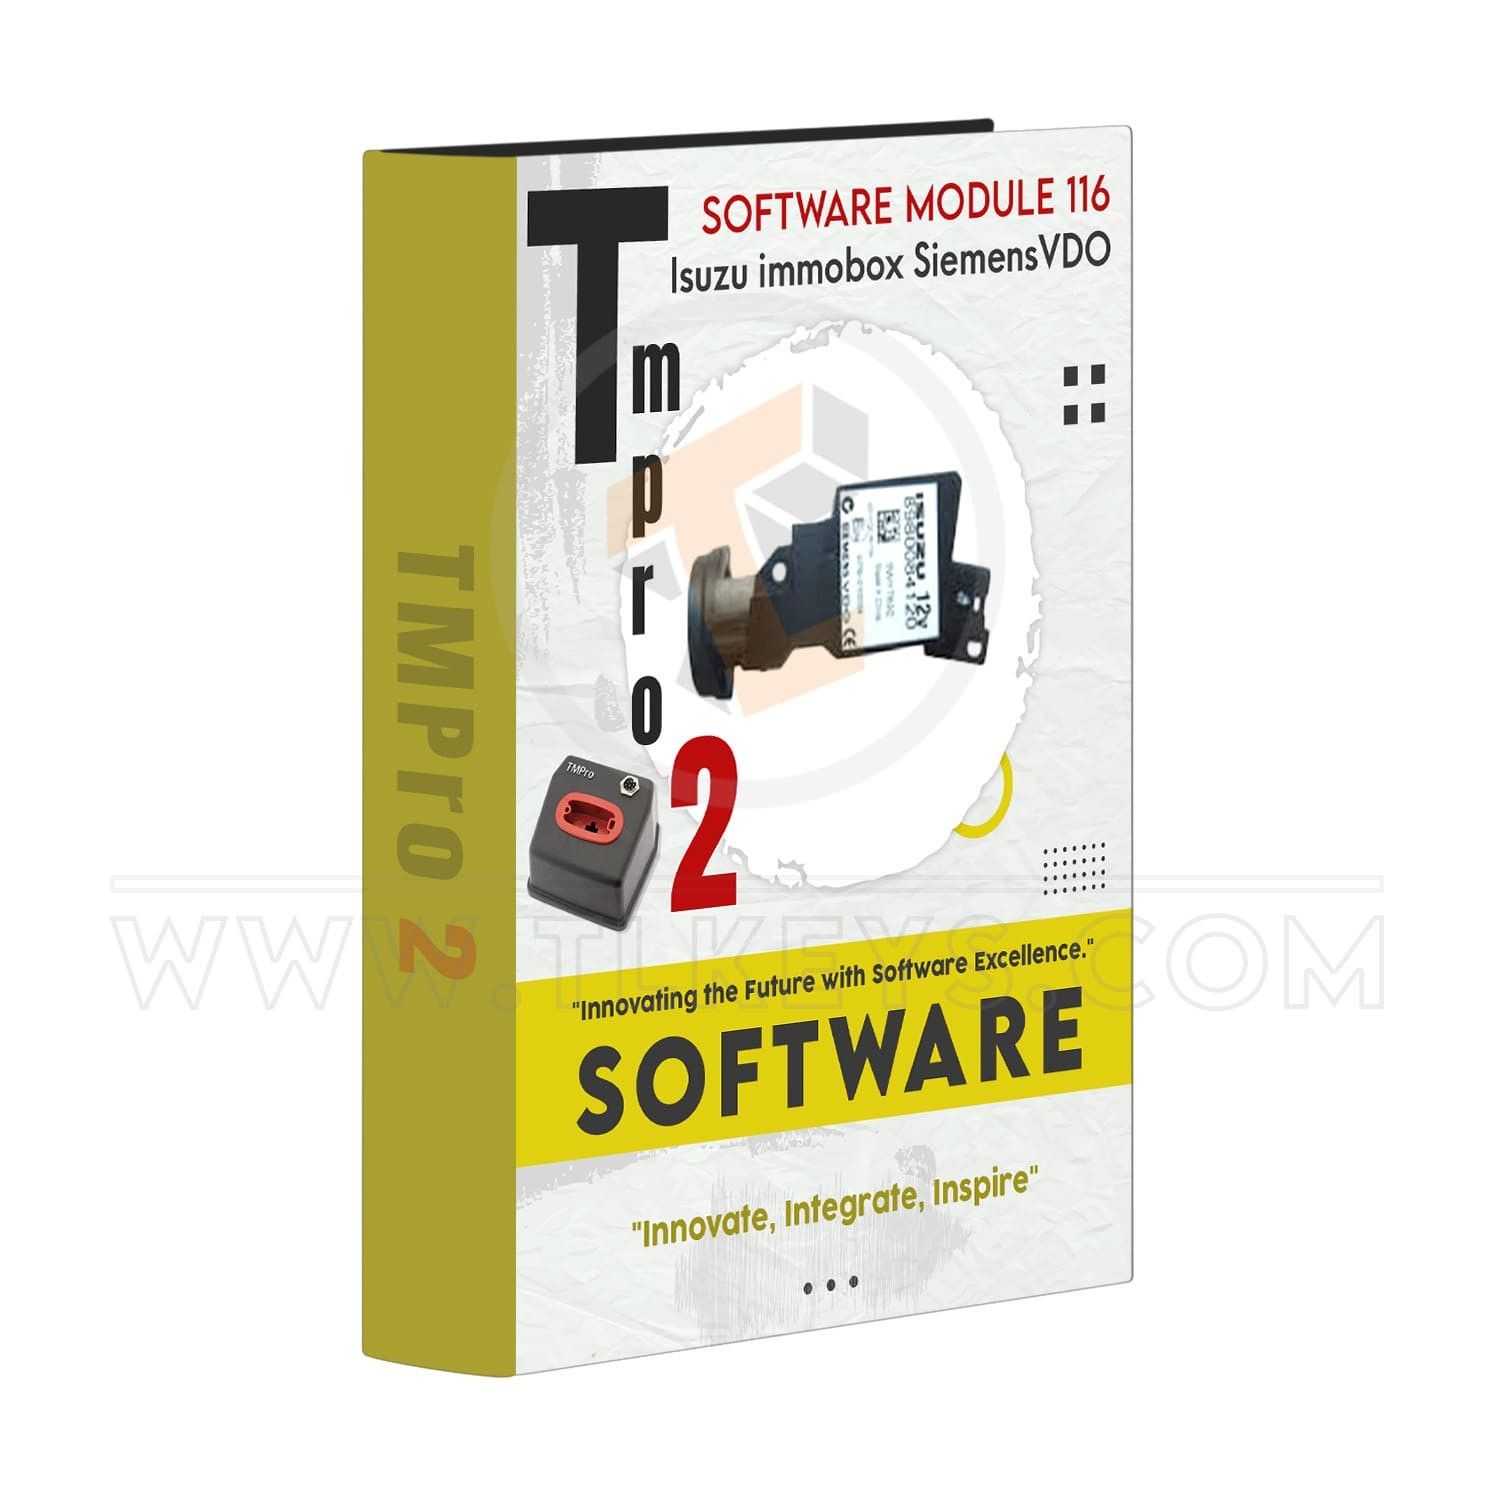 TMPRO Tmpro 2 Tmpro 2 Software module 116 – Isuzu immobox SiemensVDO